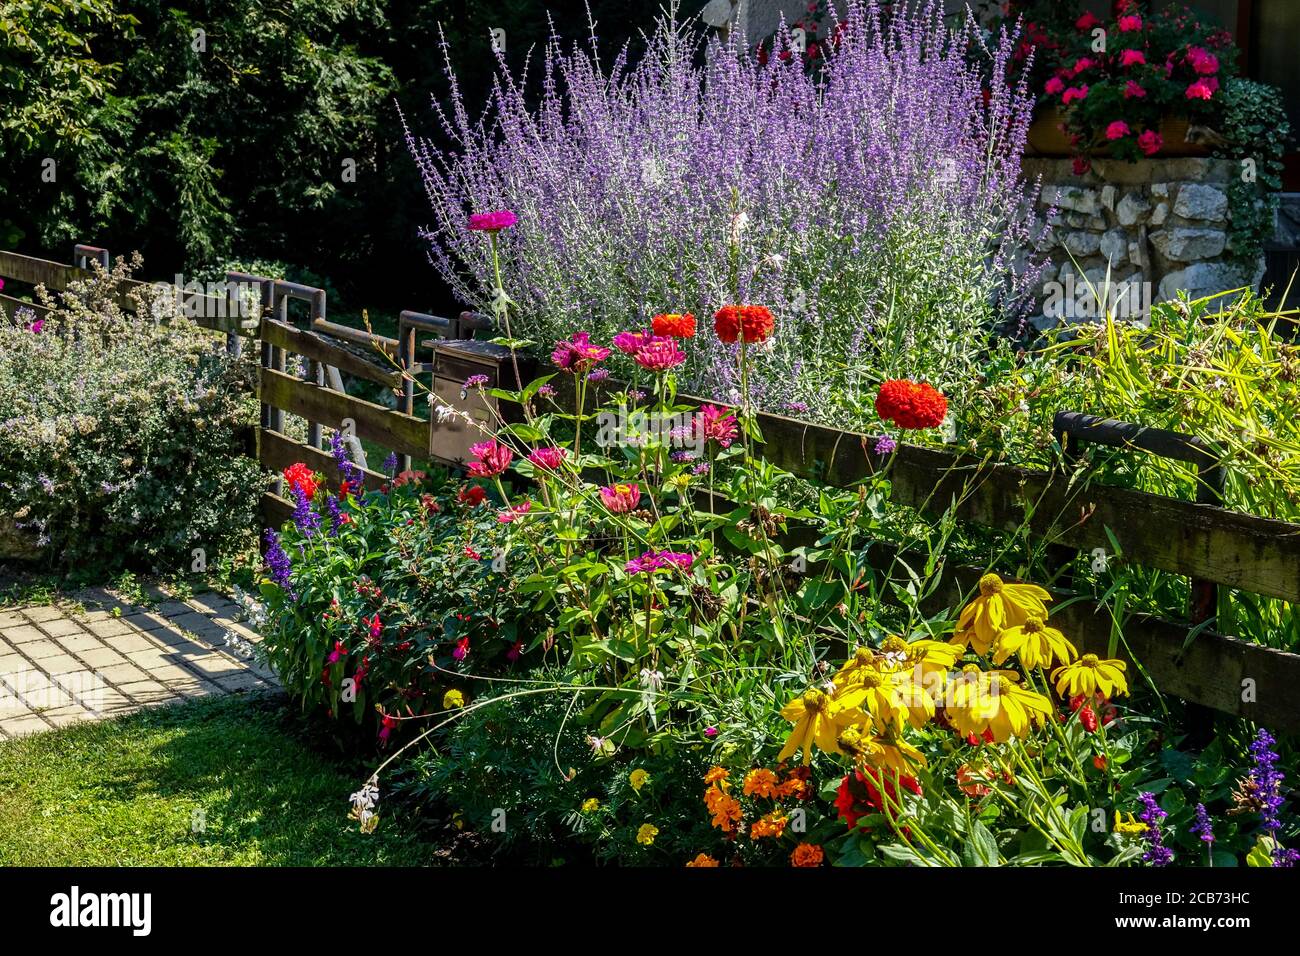 Plantes colorées à la clôture de jardin Perovskia Zinnia Rudbeckia fleurs mélangées bordent le jardin de clôture en bois Banque D'Images